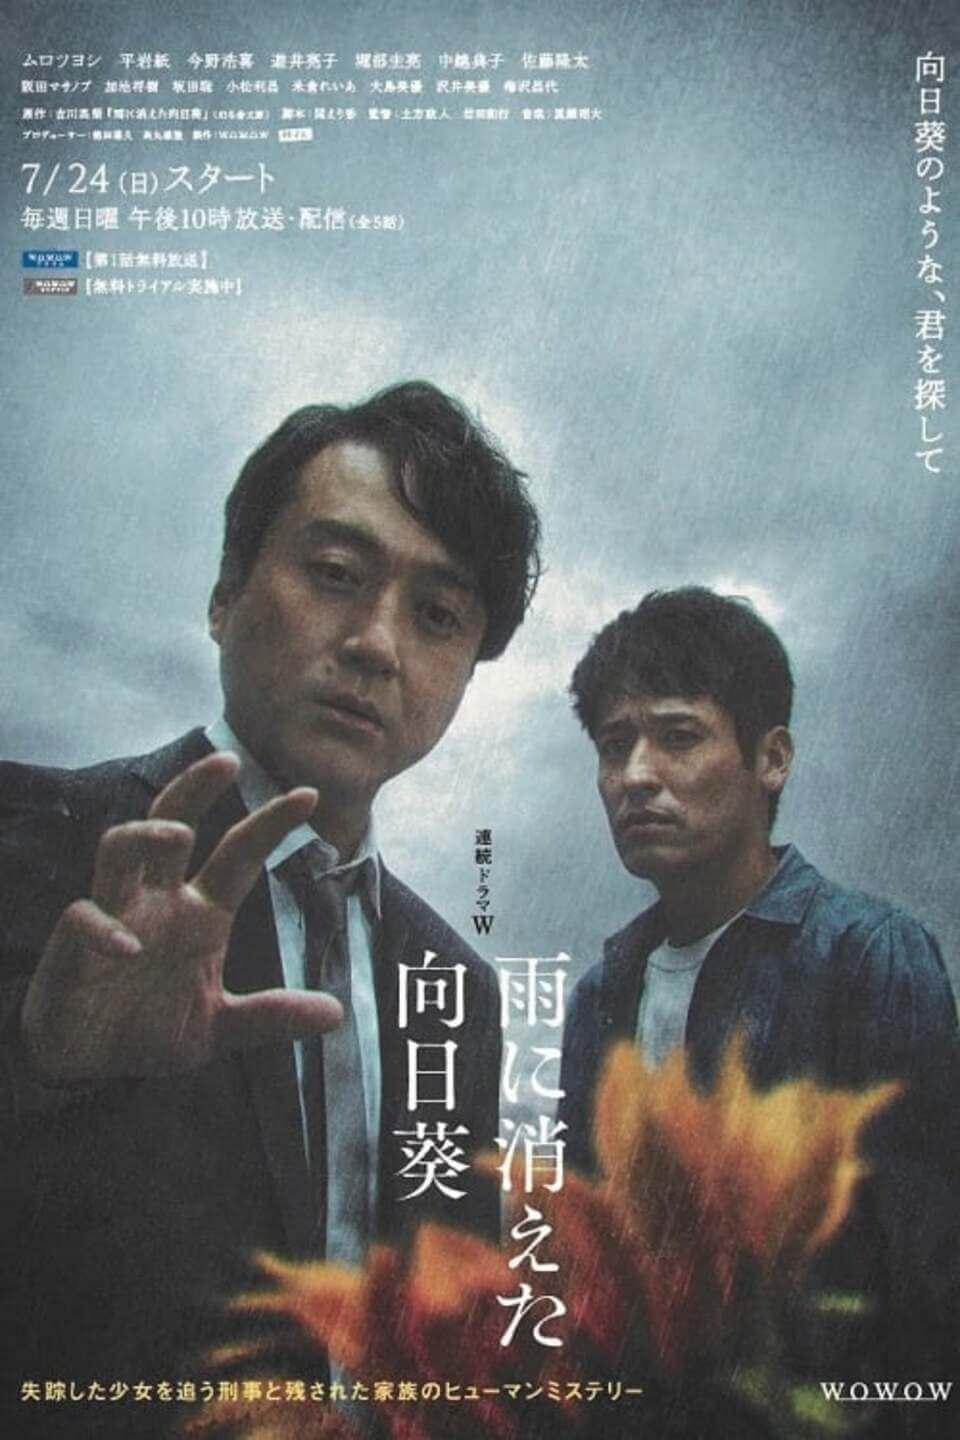 TV ratings for Ame Ni Kieta Himawari (雨に消えた向日葵) in Germany. Netflix TV series